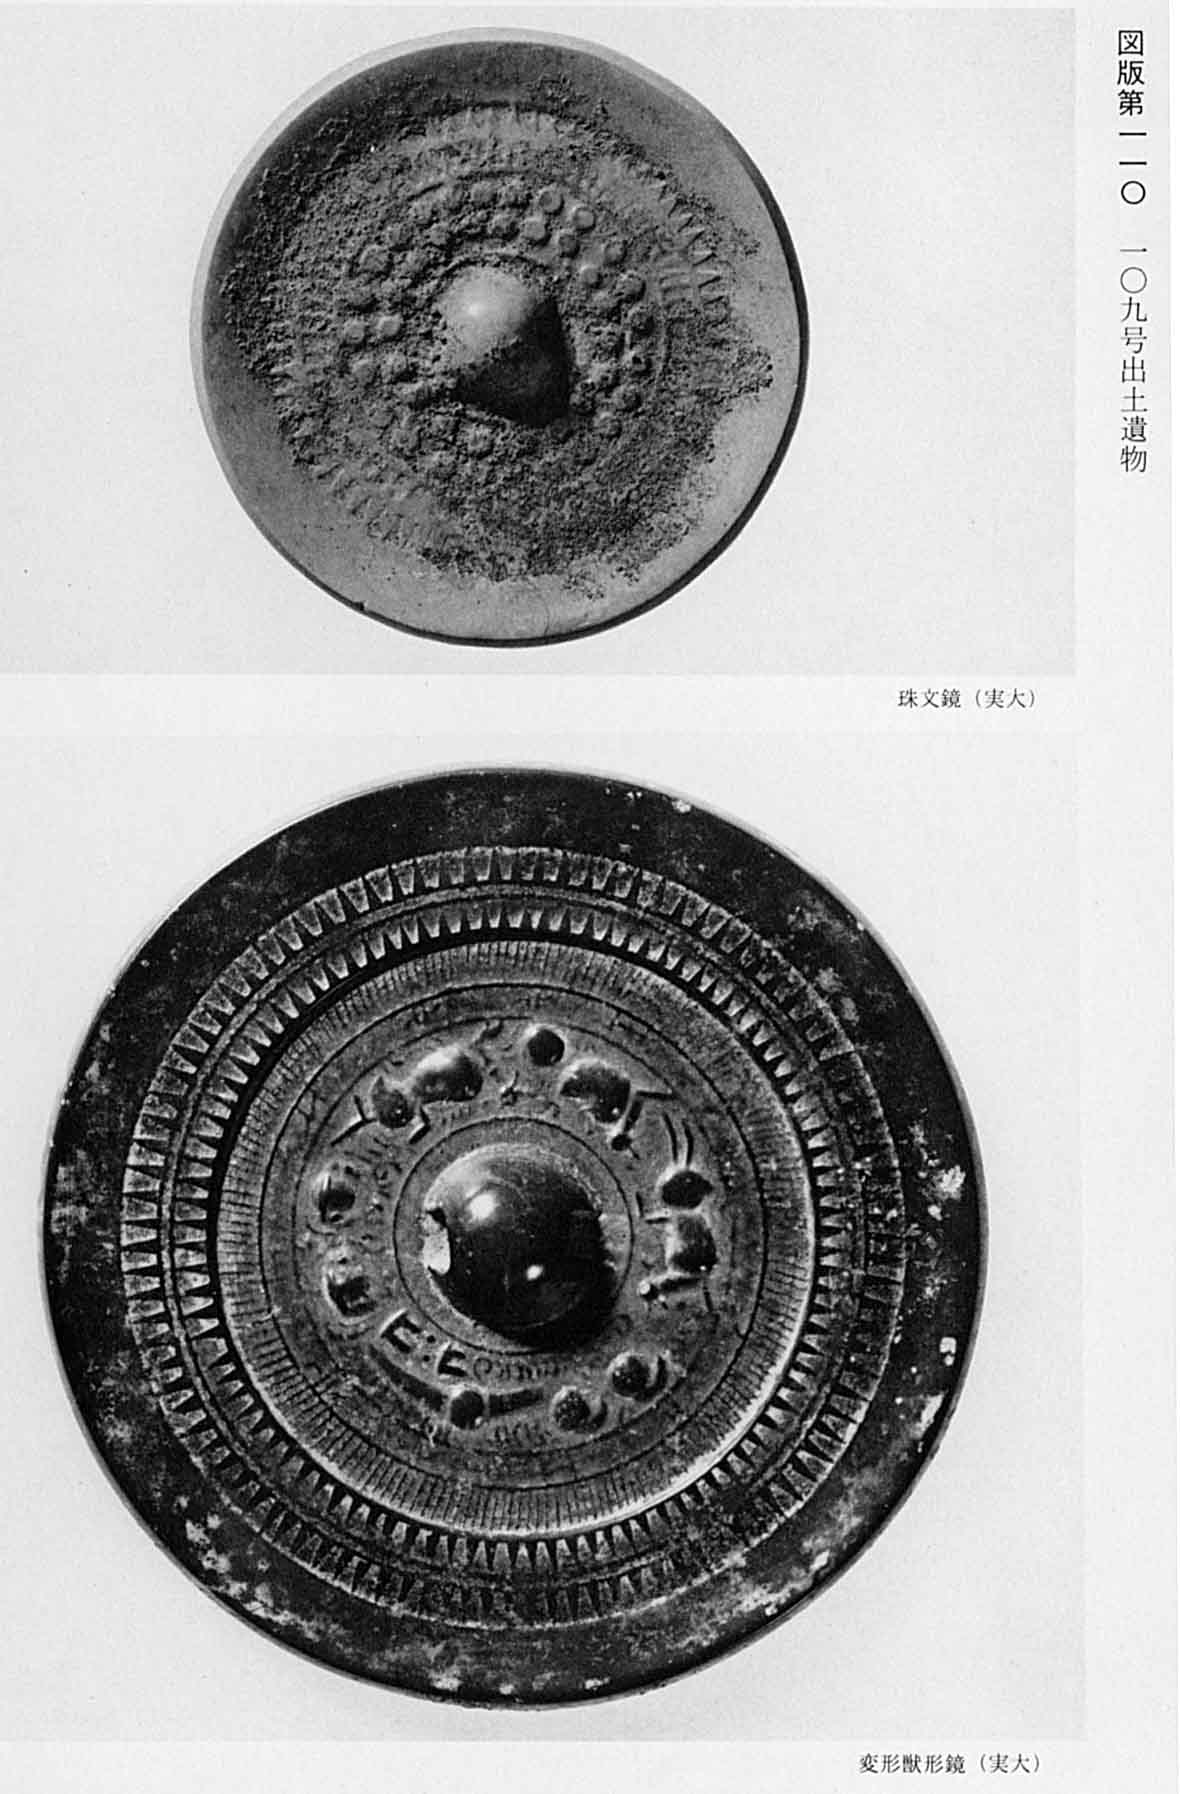 上、珠が幾つも刻まれている模様の鏡 下、獣の模様が記されている鏡が映されている、図版110 109号遺物出土遺物のモノクロ写真